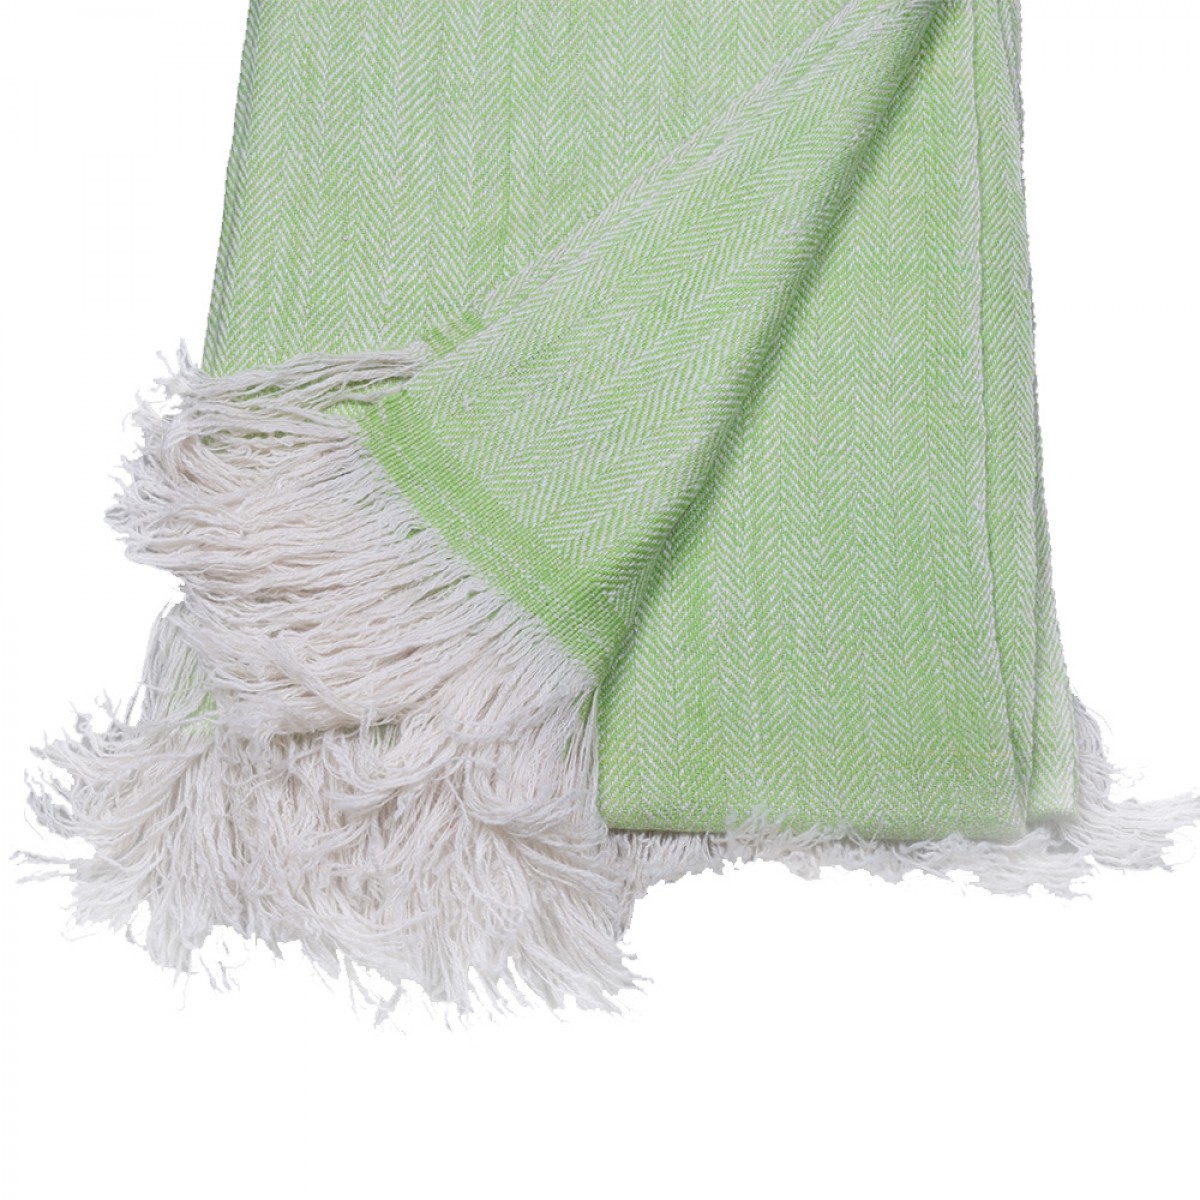 Apple Green Herringbone Weave Cashmere Blanket  (Made to Order)